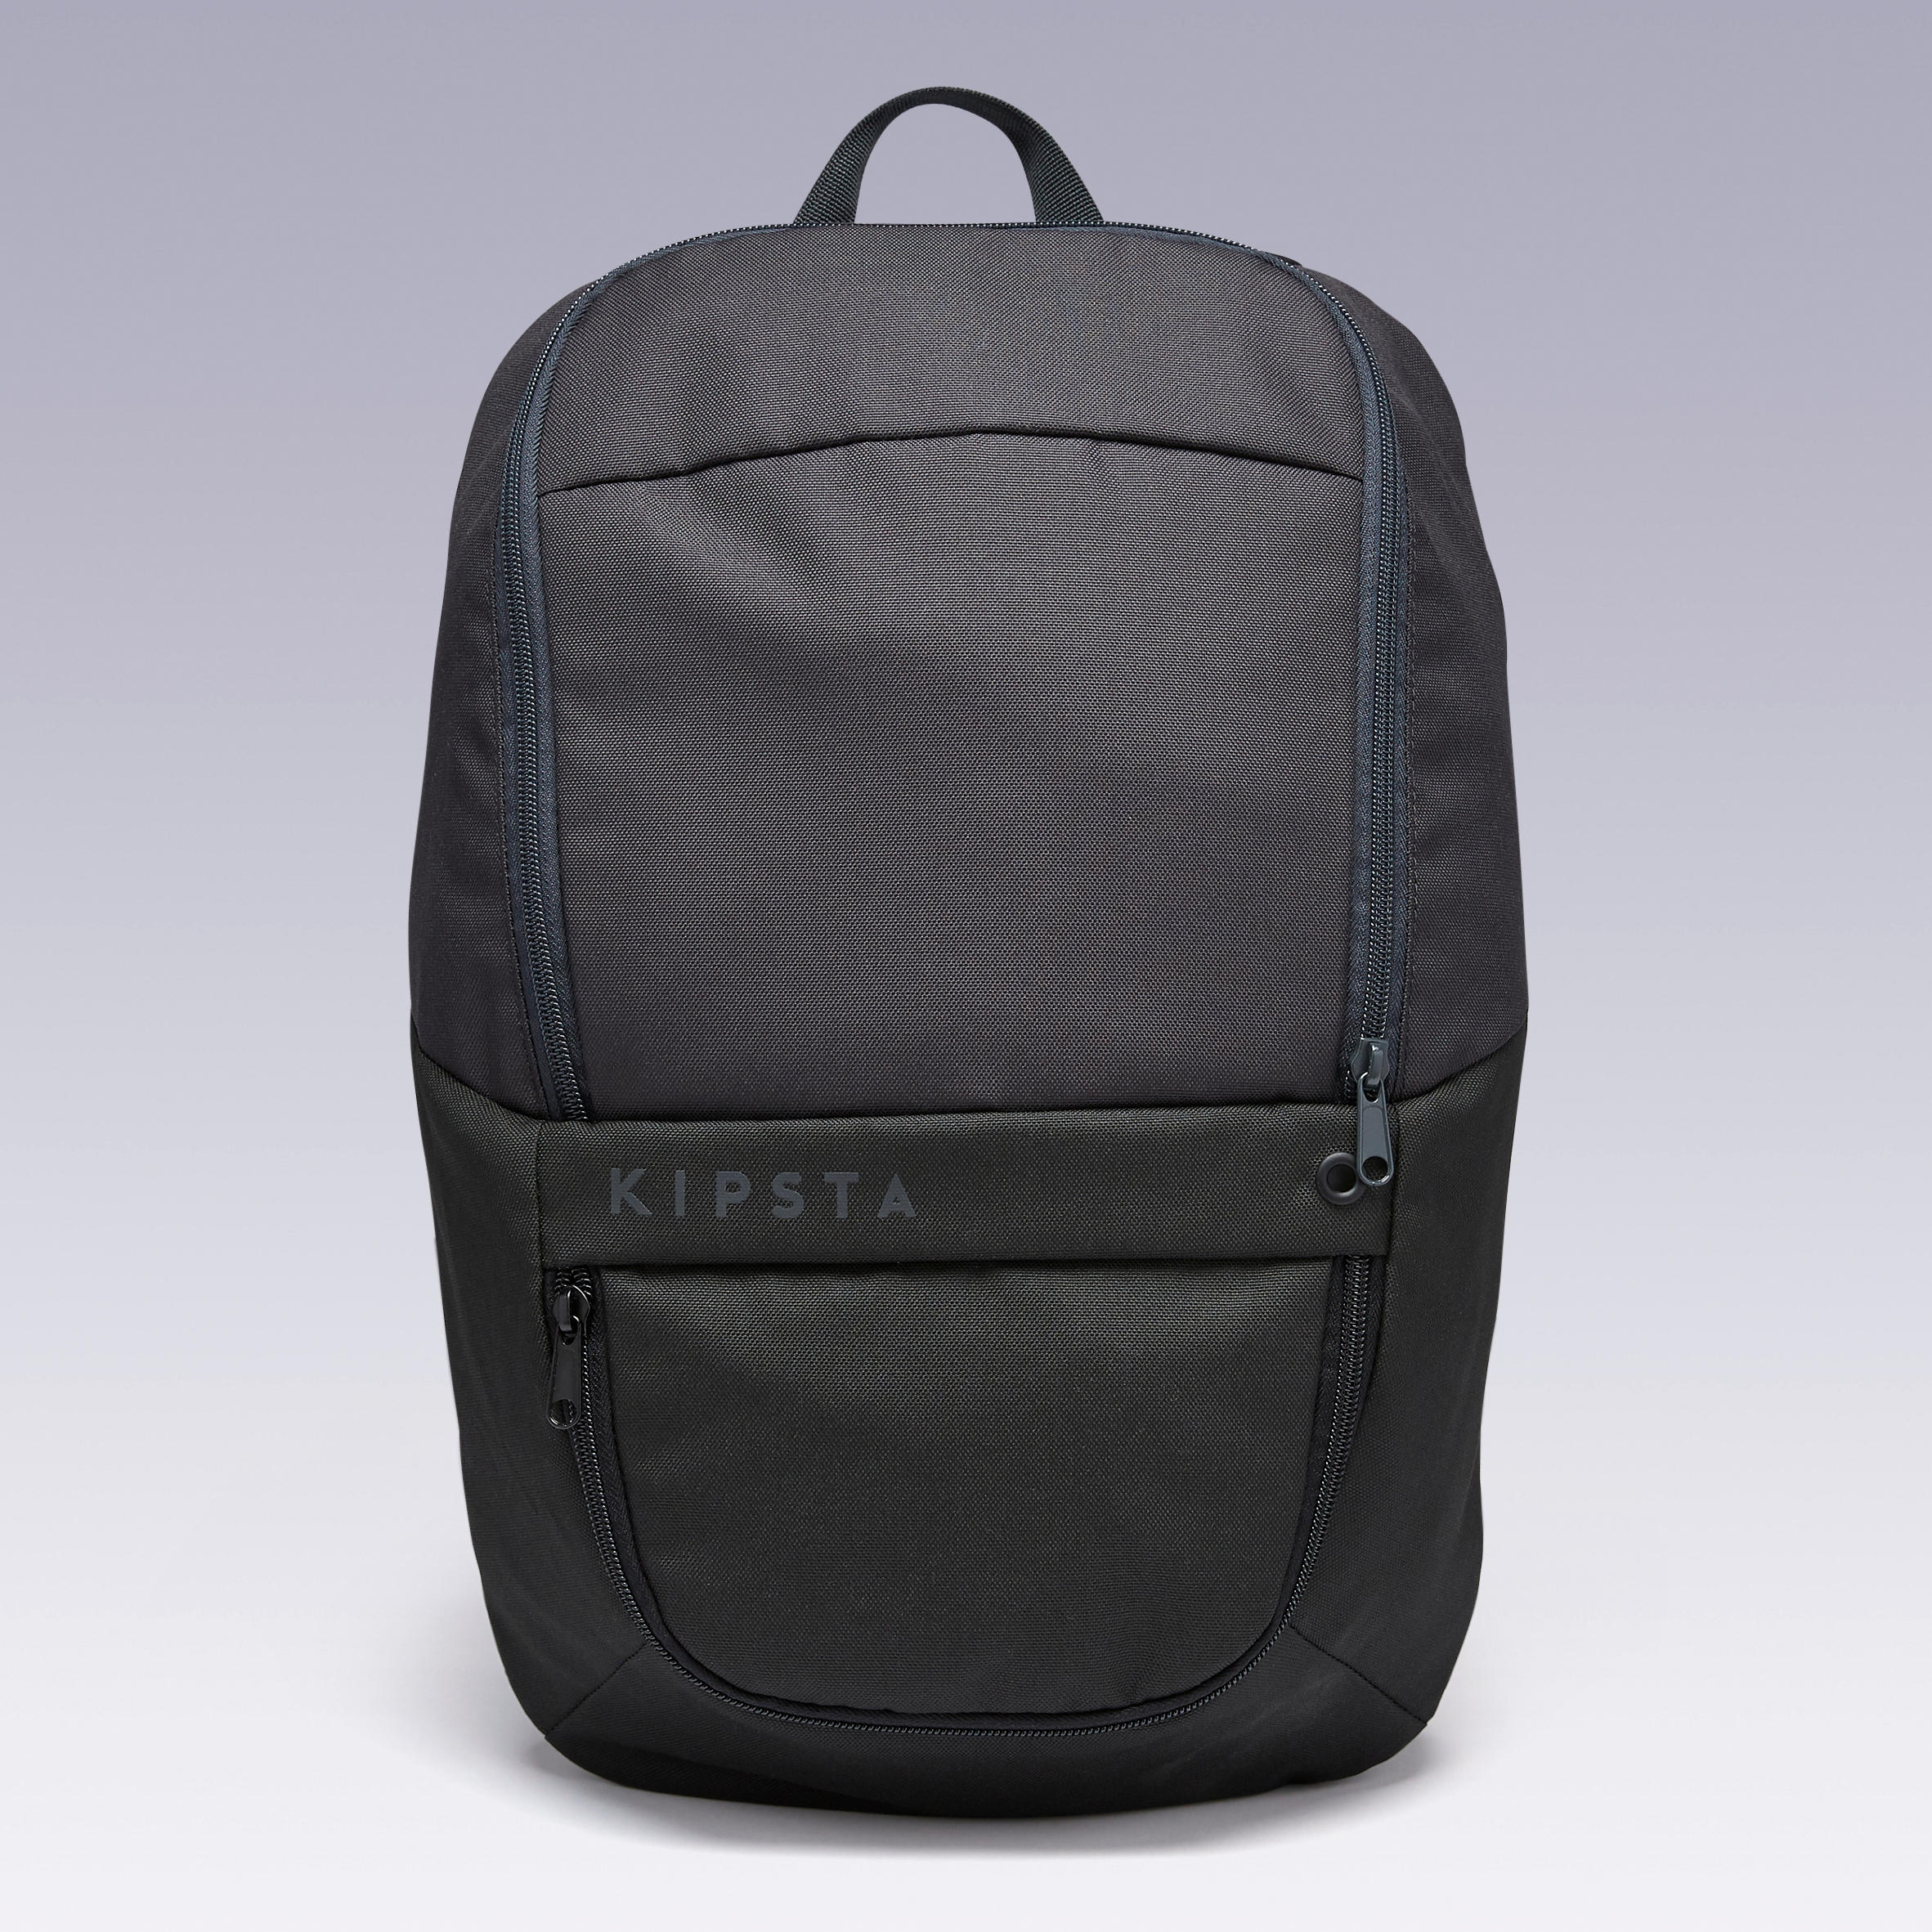 ULPP 17-Litre Backpack - Black 2/11